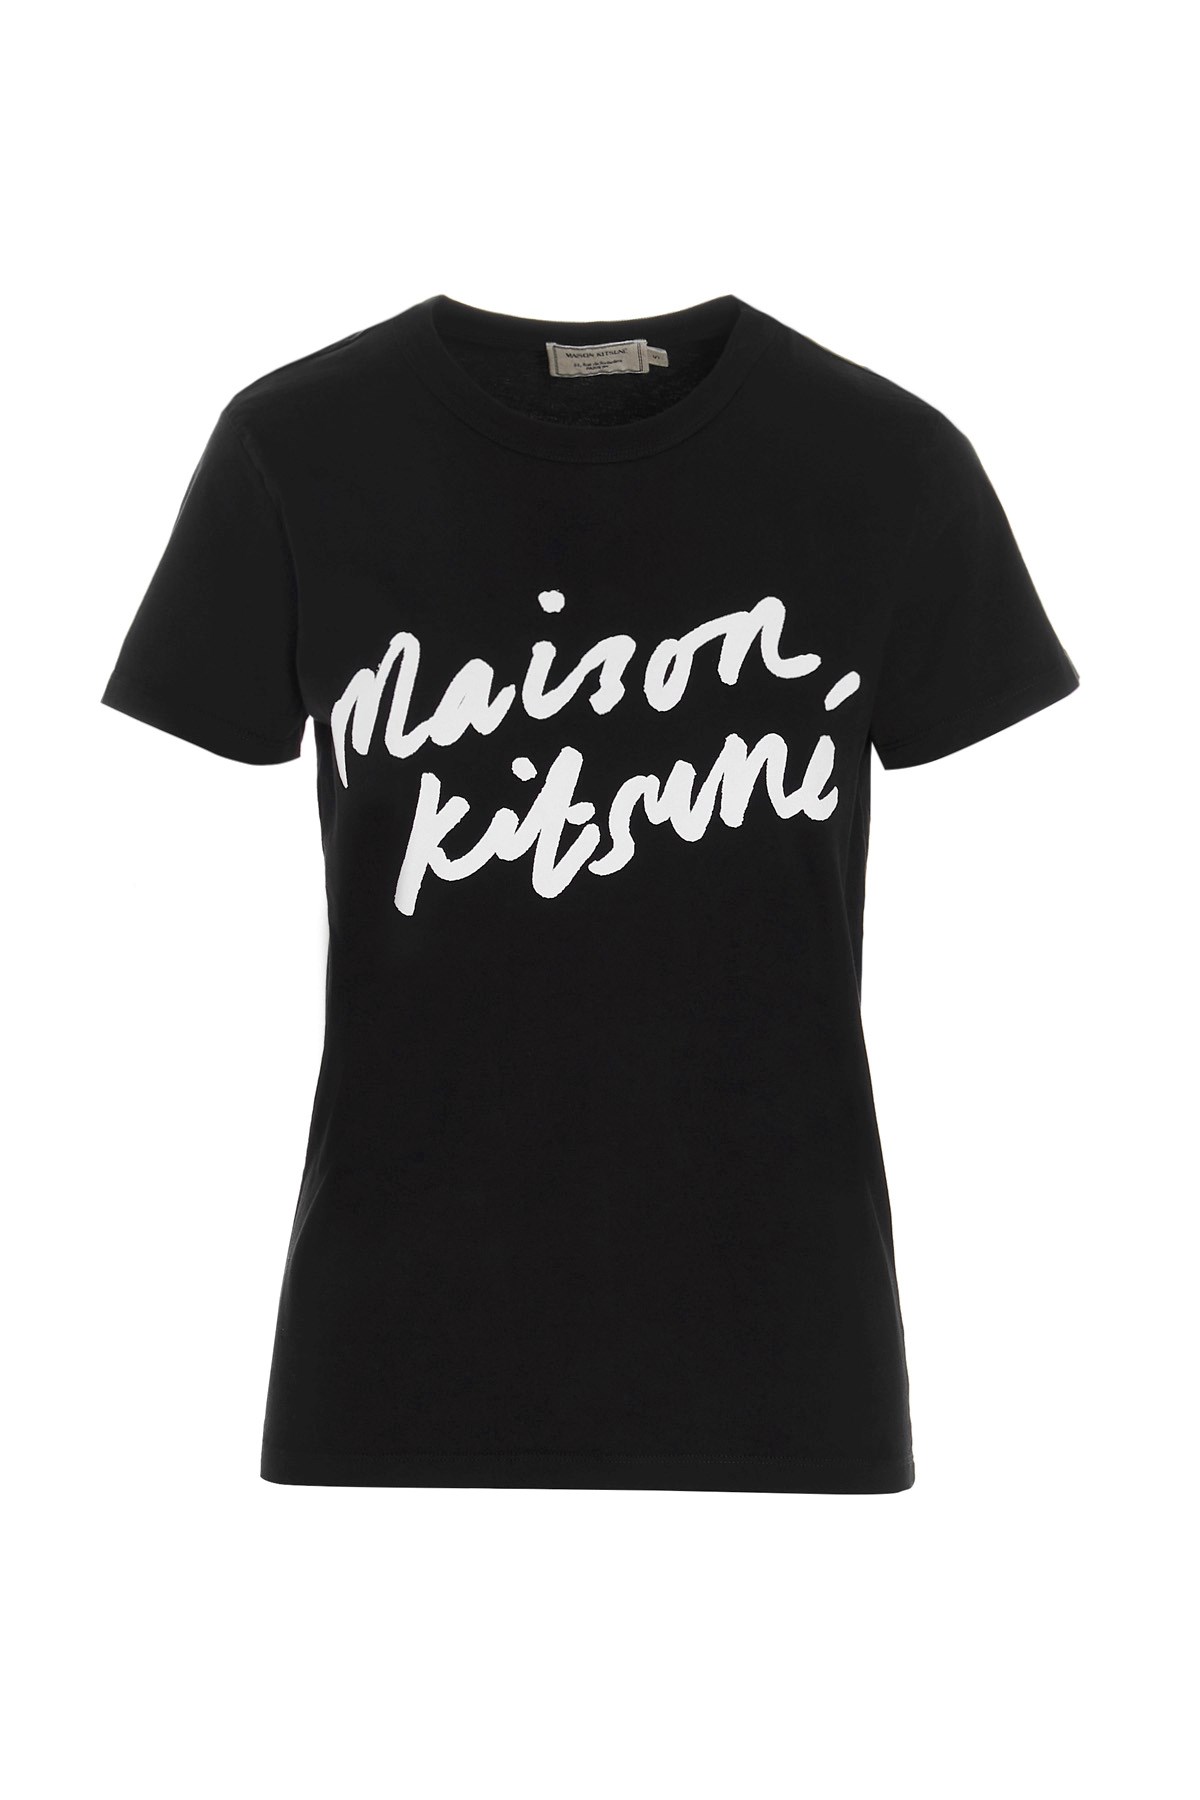 MAISON KITSUNE’ 'Handwriting' T-Shirt